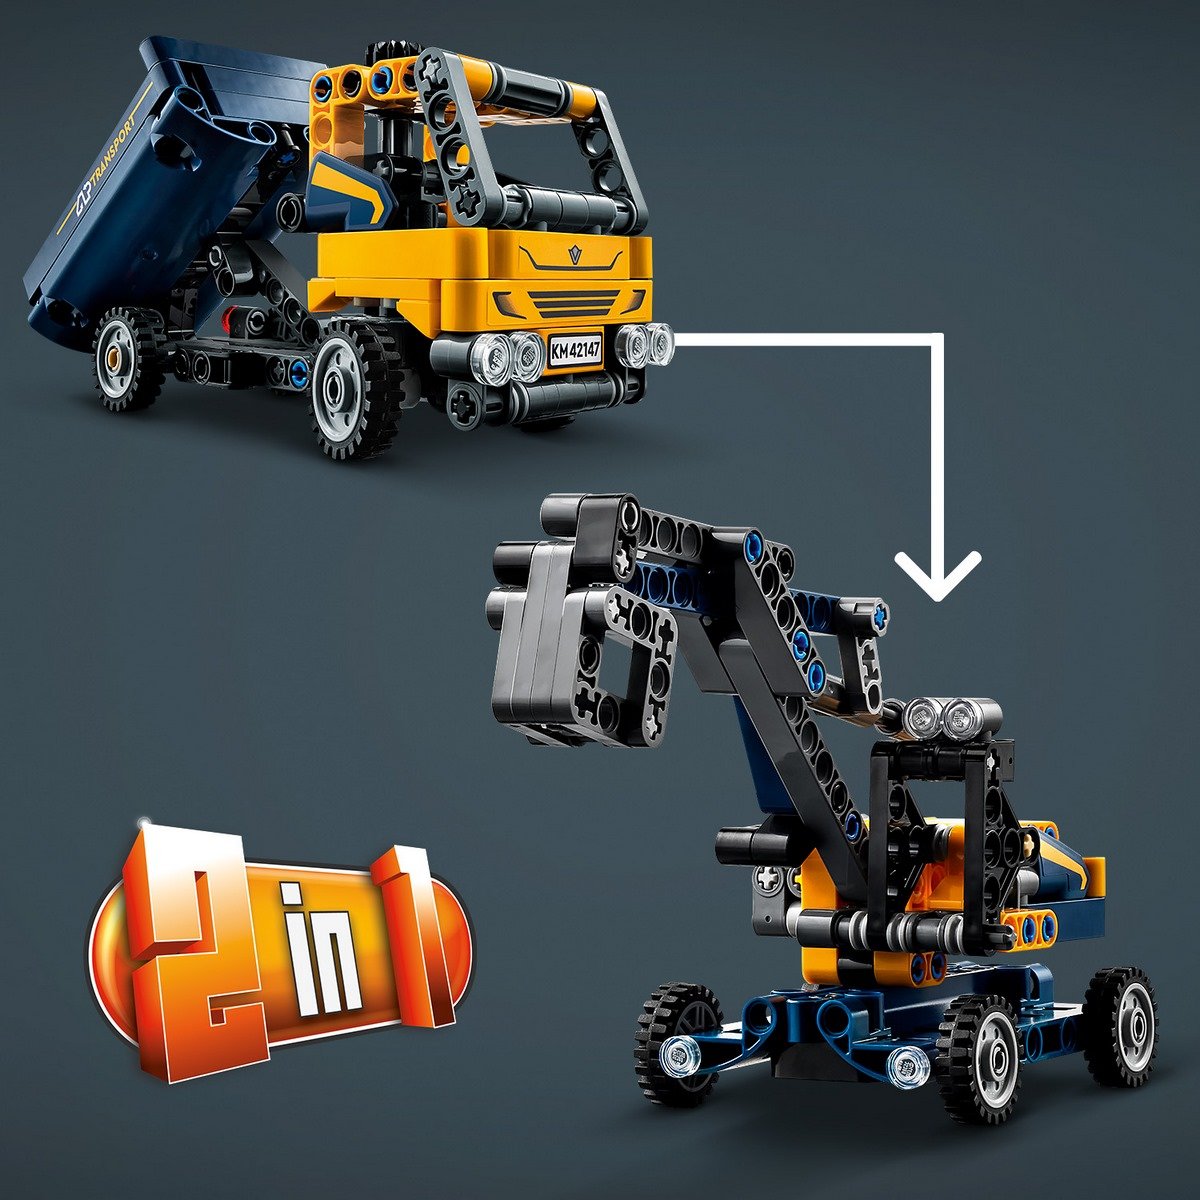 La camion à benne basculante Lego technic 42147 - La Grande Récré